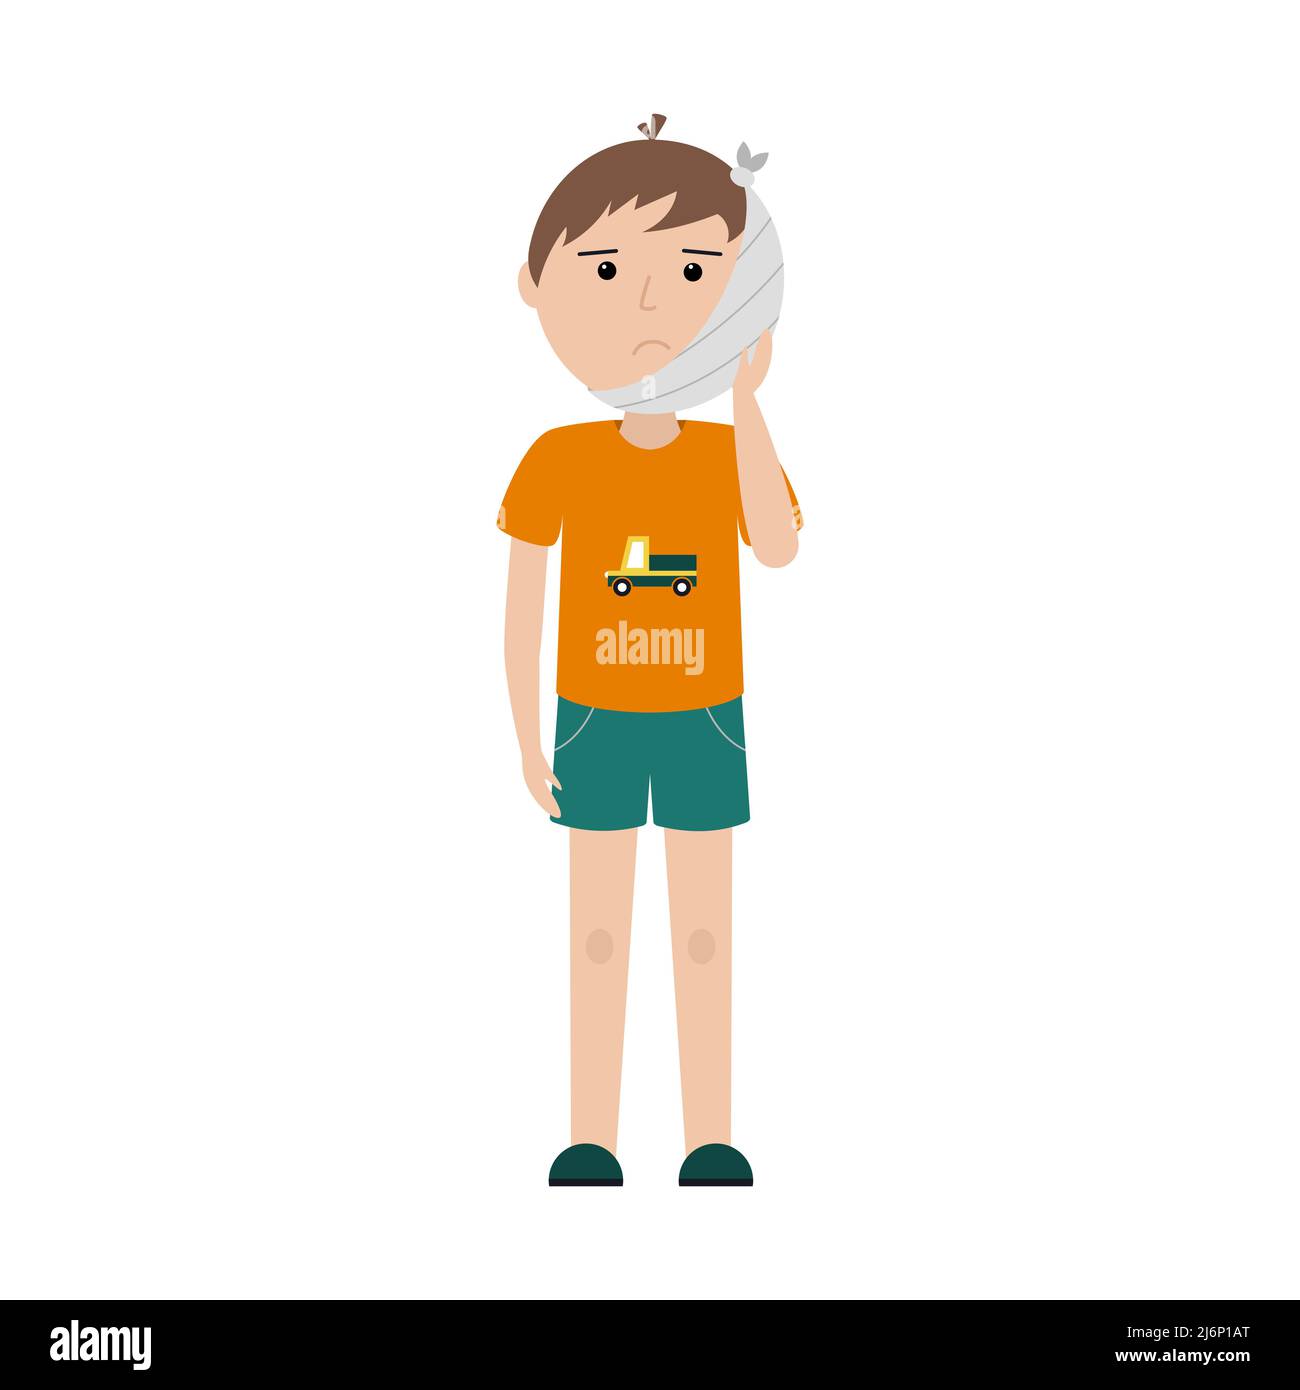 Ein trauriger Junge in einem T-Shirt mit einem Auto und Shorts steht mit seiner verbundenen Wange. Zahnschmerzen. Verband auf dem Kopf. Einfache Farbdarstellung mit einem Kind Stock Vektor